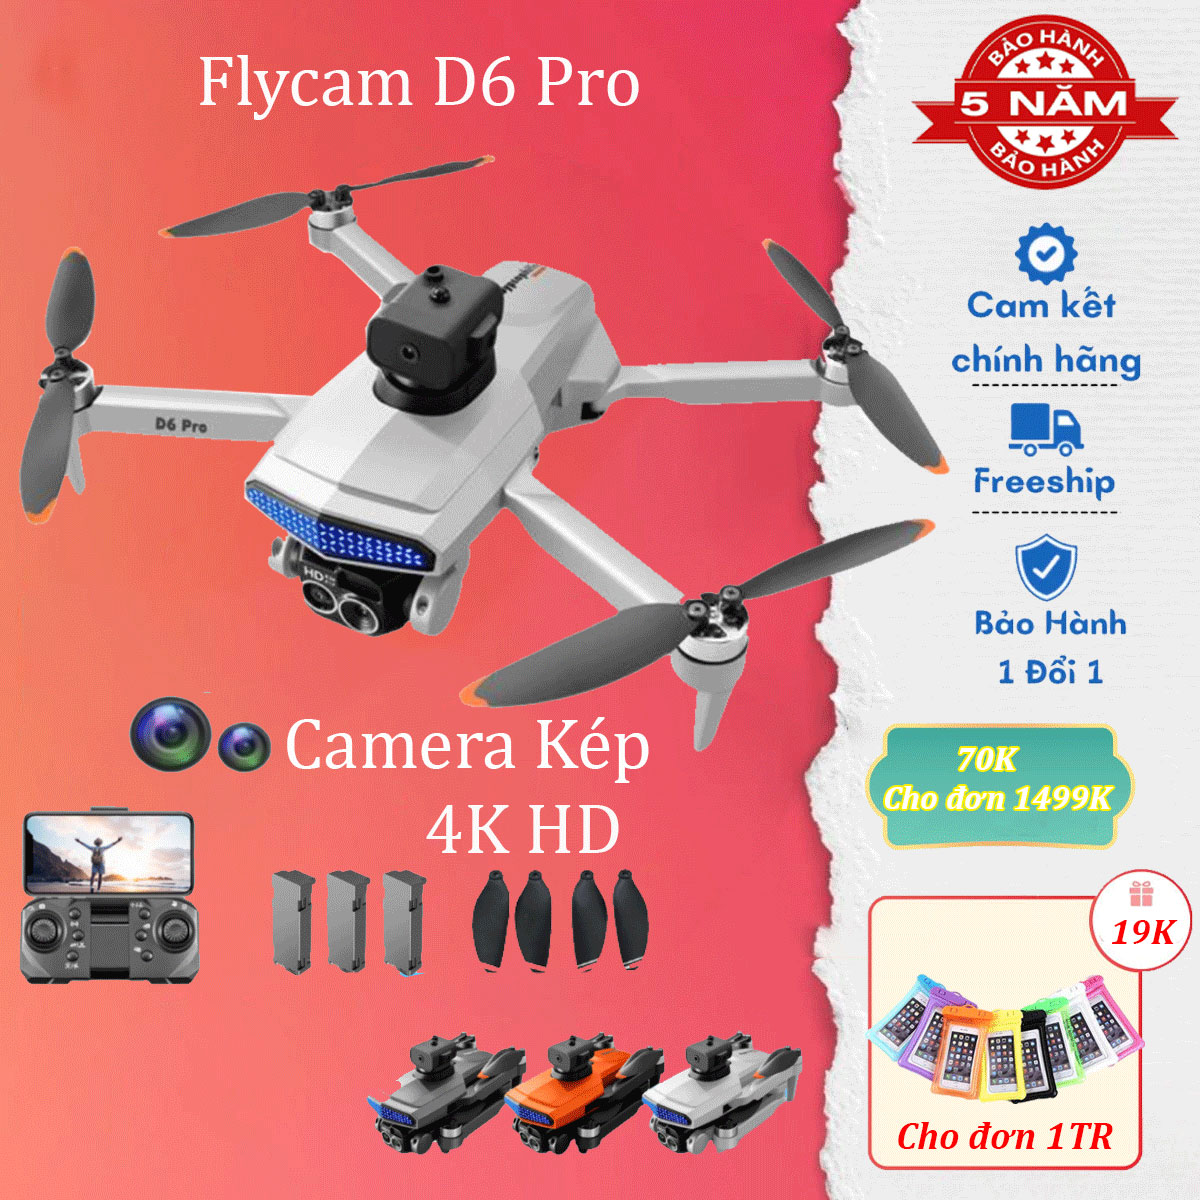 Flycam mini, máy bay flycam D6 Pro, drone với camera kép 4k HD, cảm biến chống va chạm, không chổi than bảo hành lên đến 5 năm